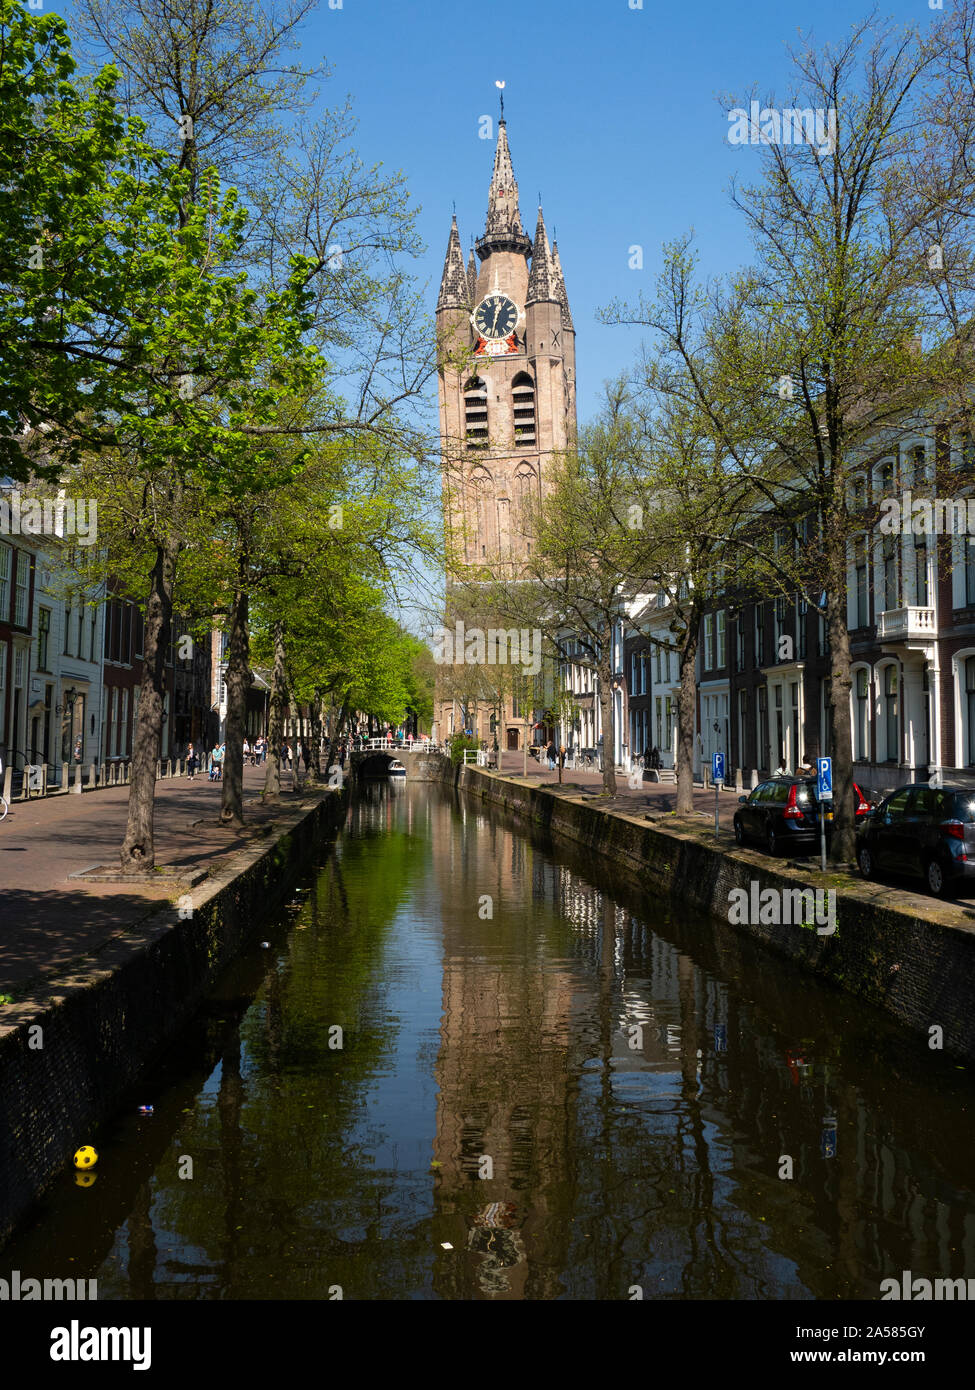 Vieille Ville avec Oude Kerk clocher de l'église s'élevant au-dessus de canal, Belft, Hollande méridionale, Pays-Bas Banque D'Images